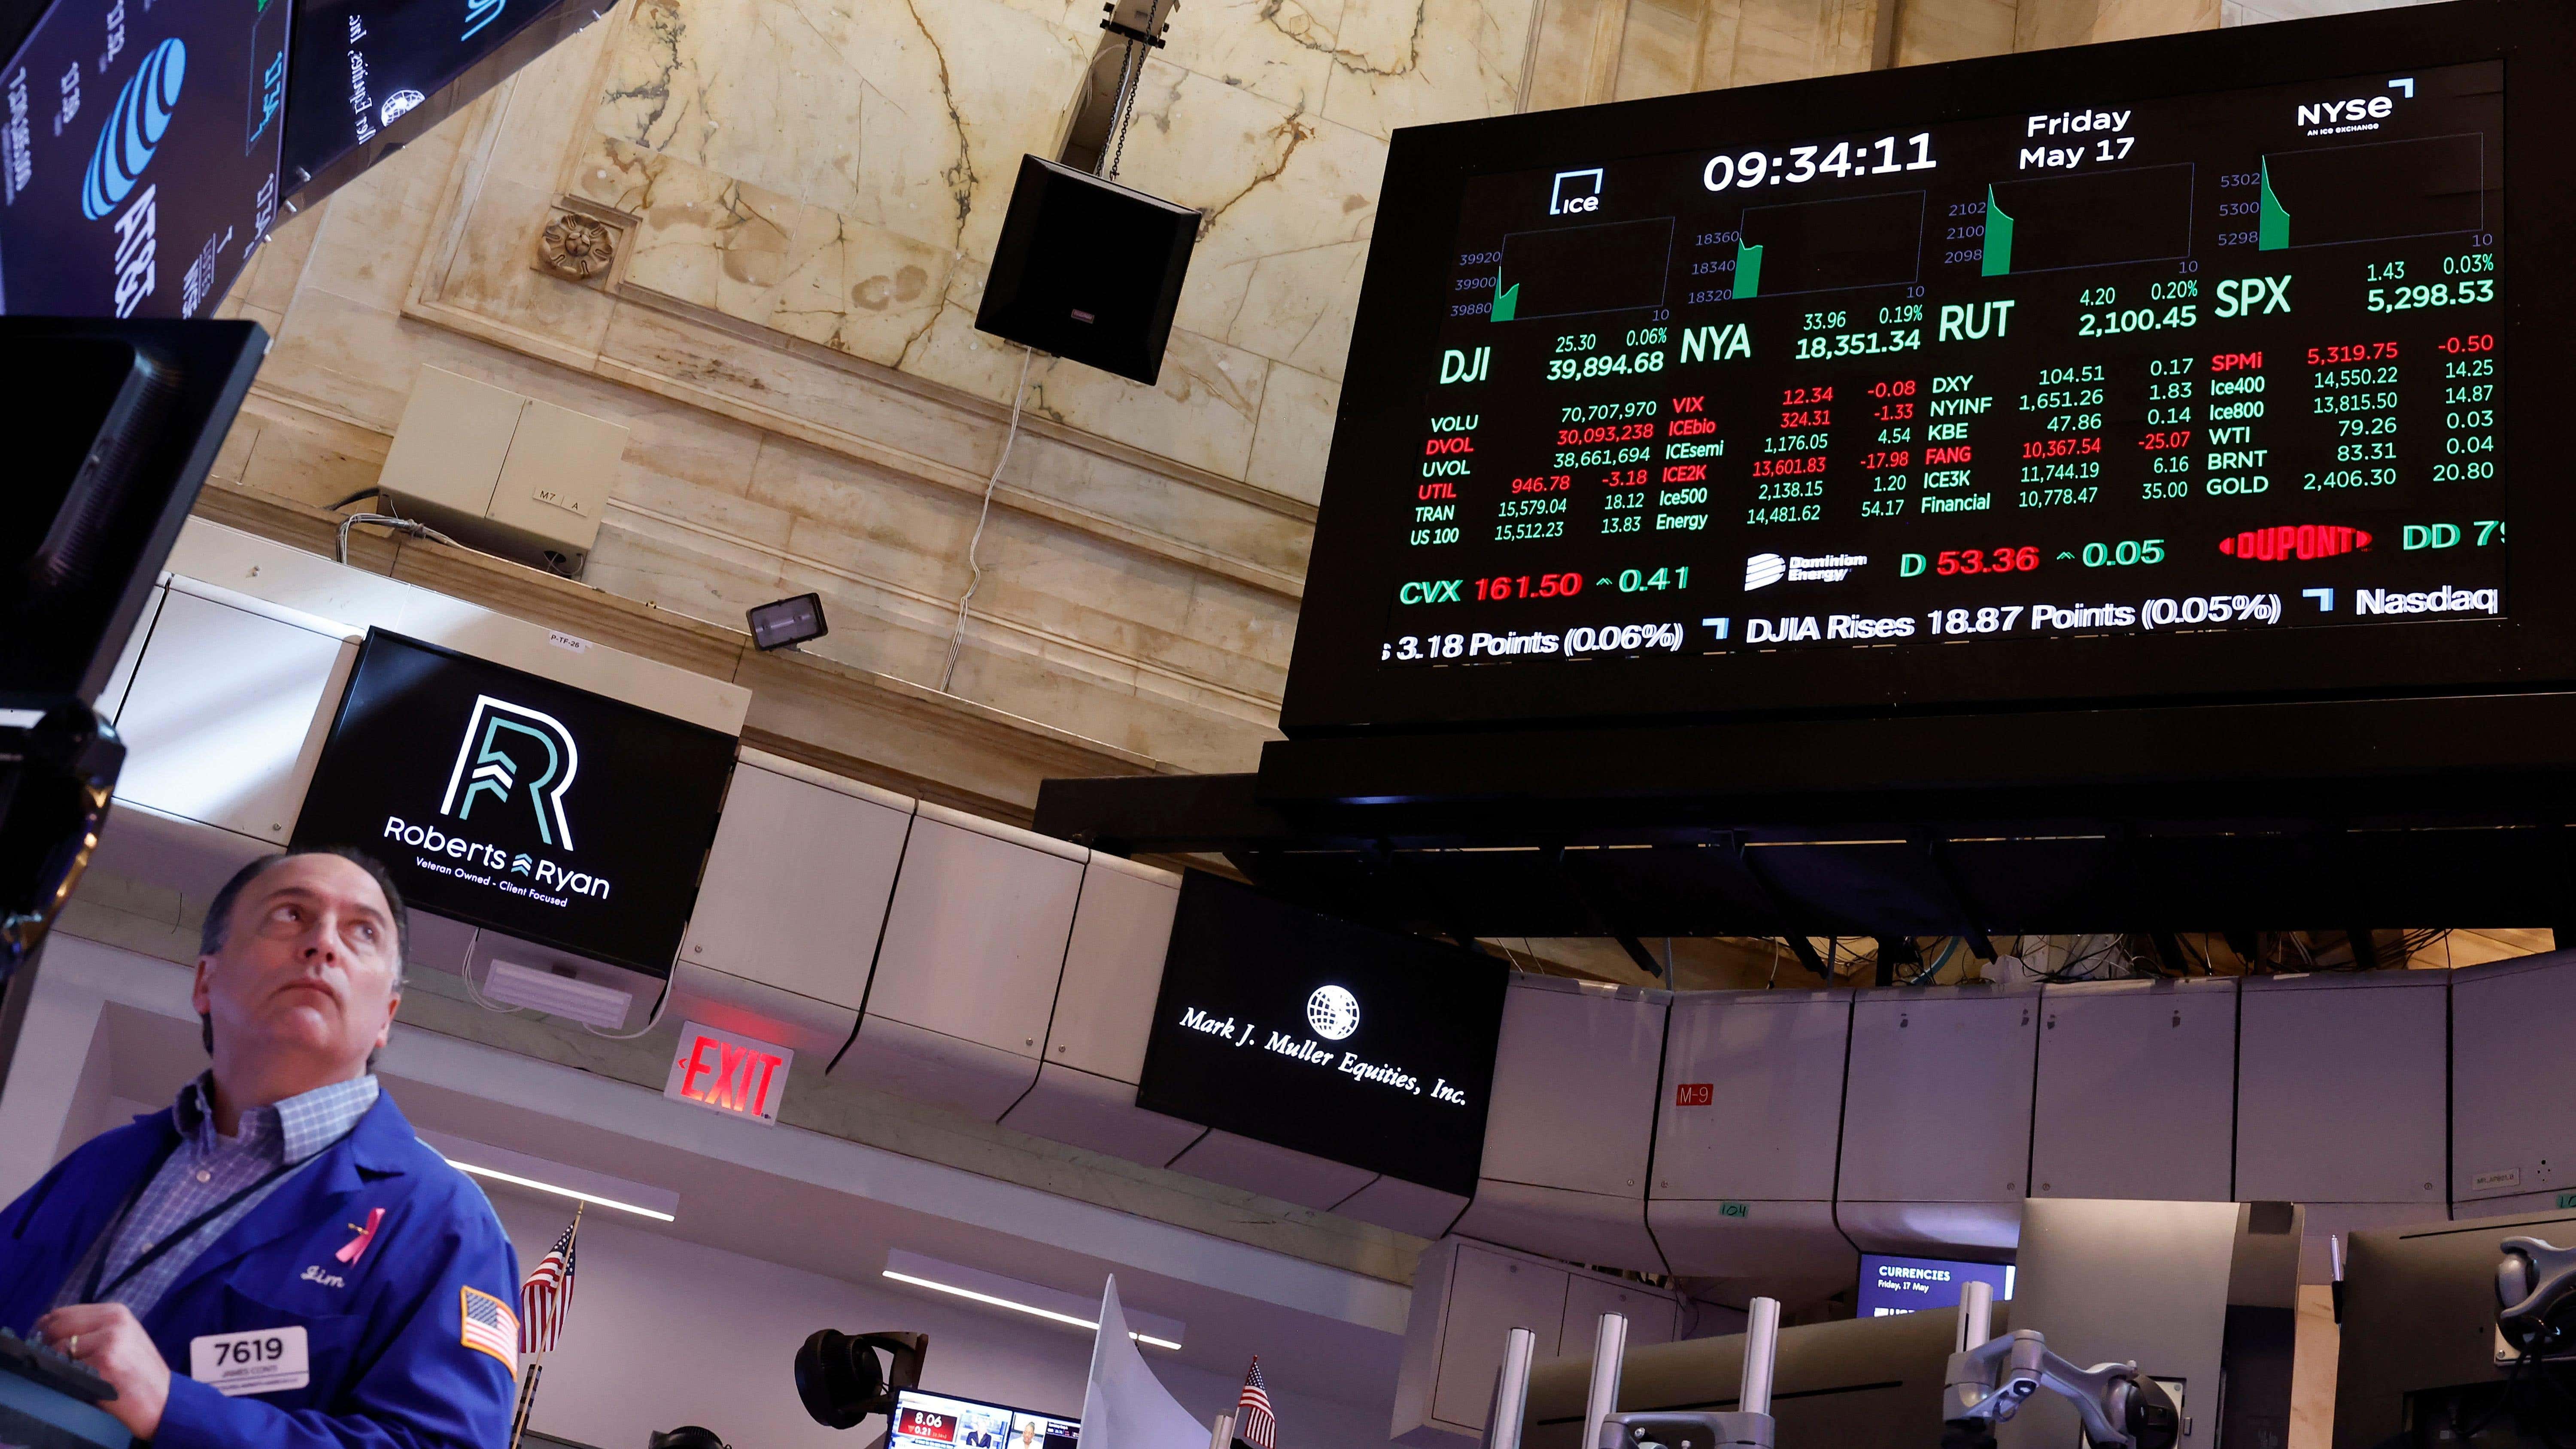 New York Menkul Kıymetler Borsasındaki Glitch Piyasaları Kaosa Sürüklüyor başlıklı makale için resim